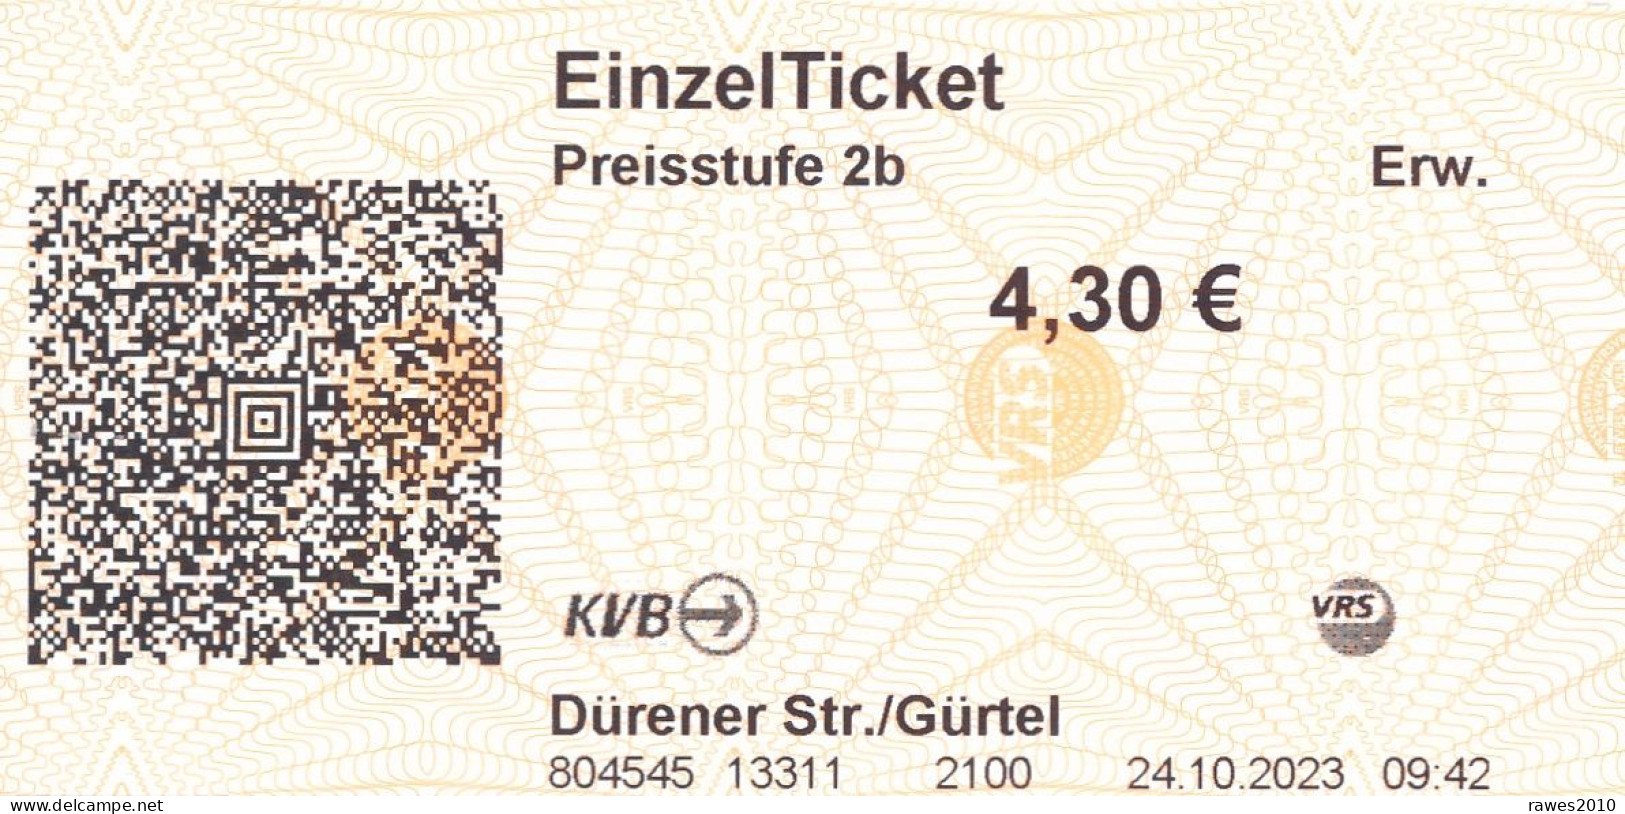 BRD Köln / Frechen EinzelTicket Preisstufe 2b 4,30 € Strassenbahn 2023 KVB Dürener Str. / Gürtel - Europe